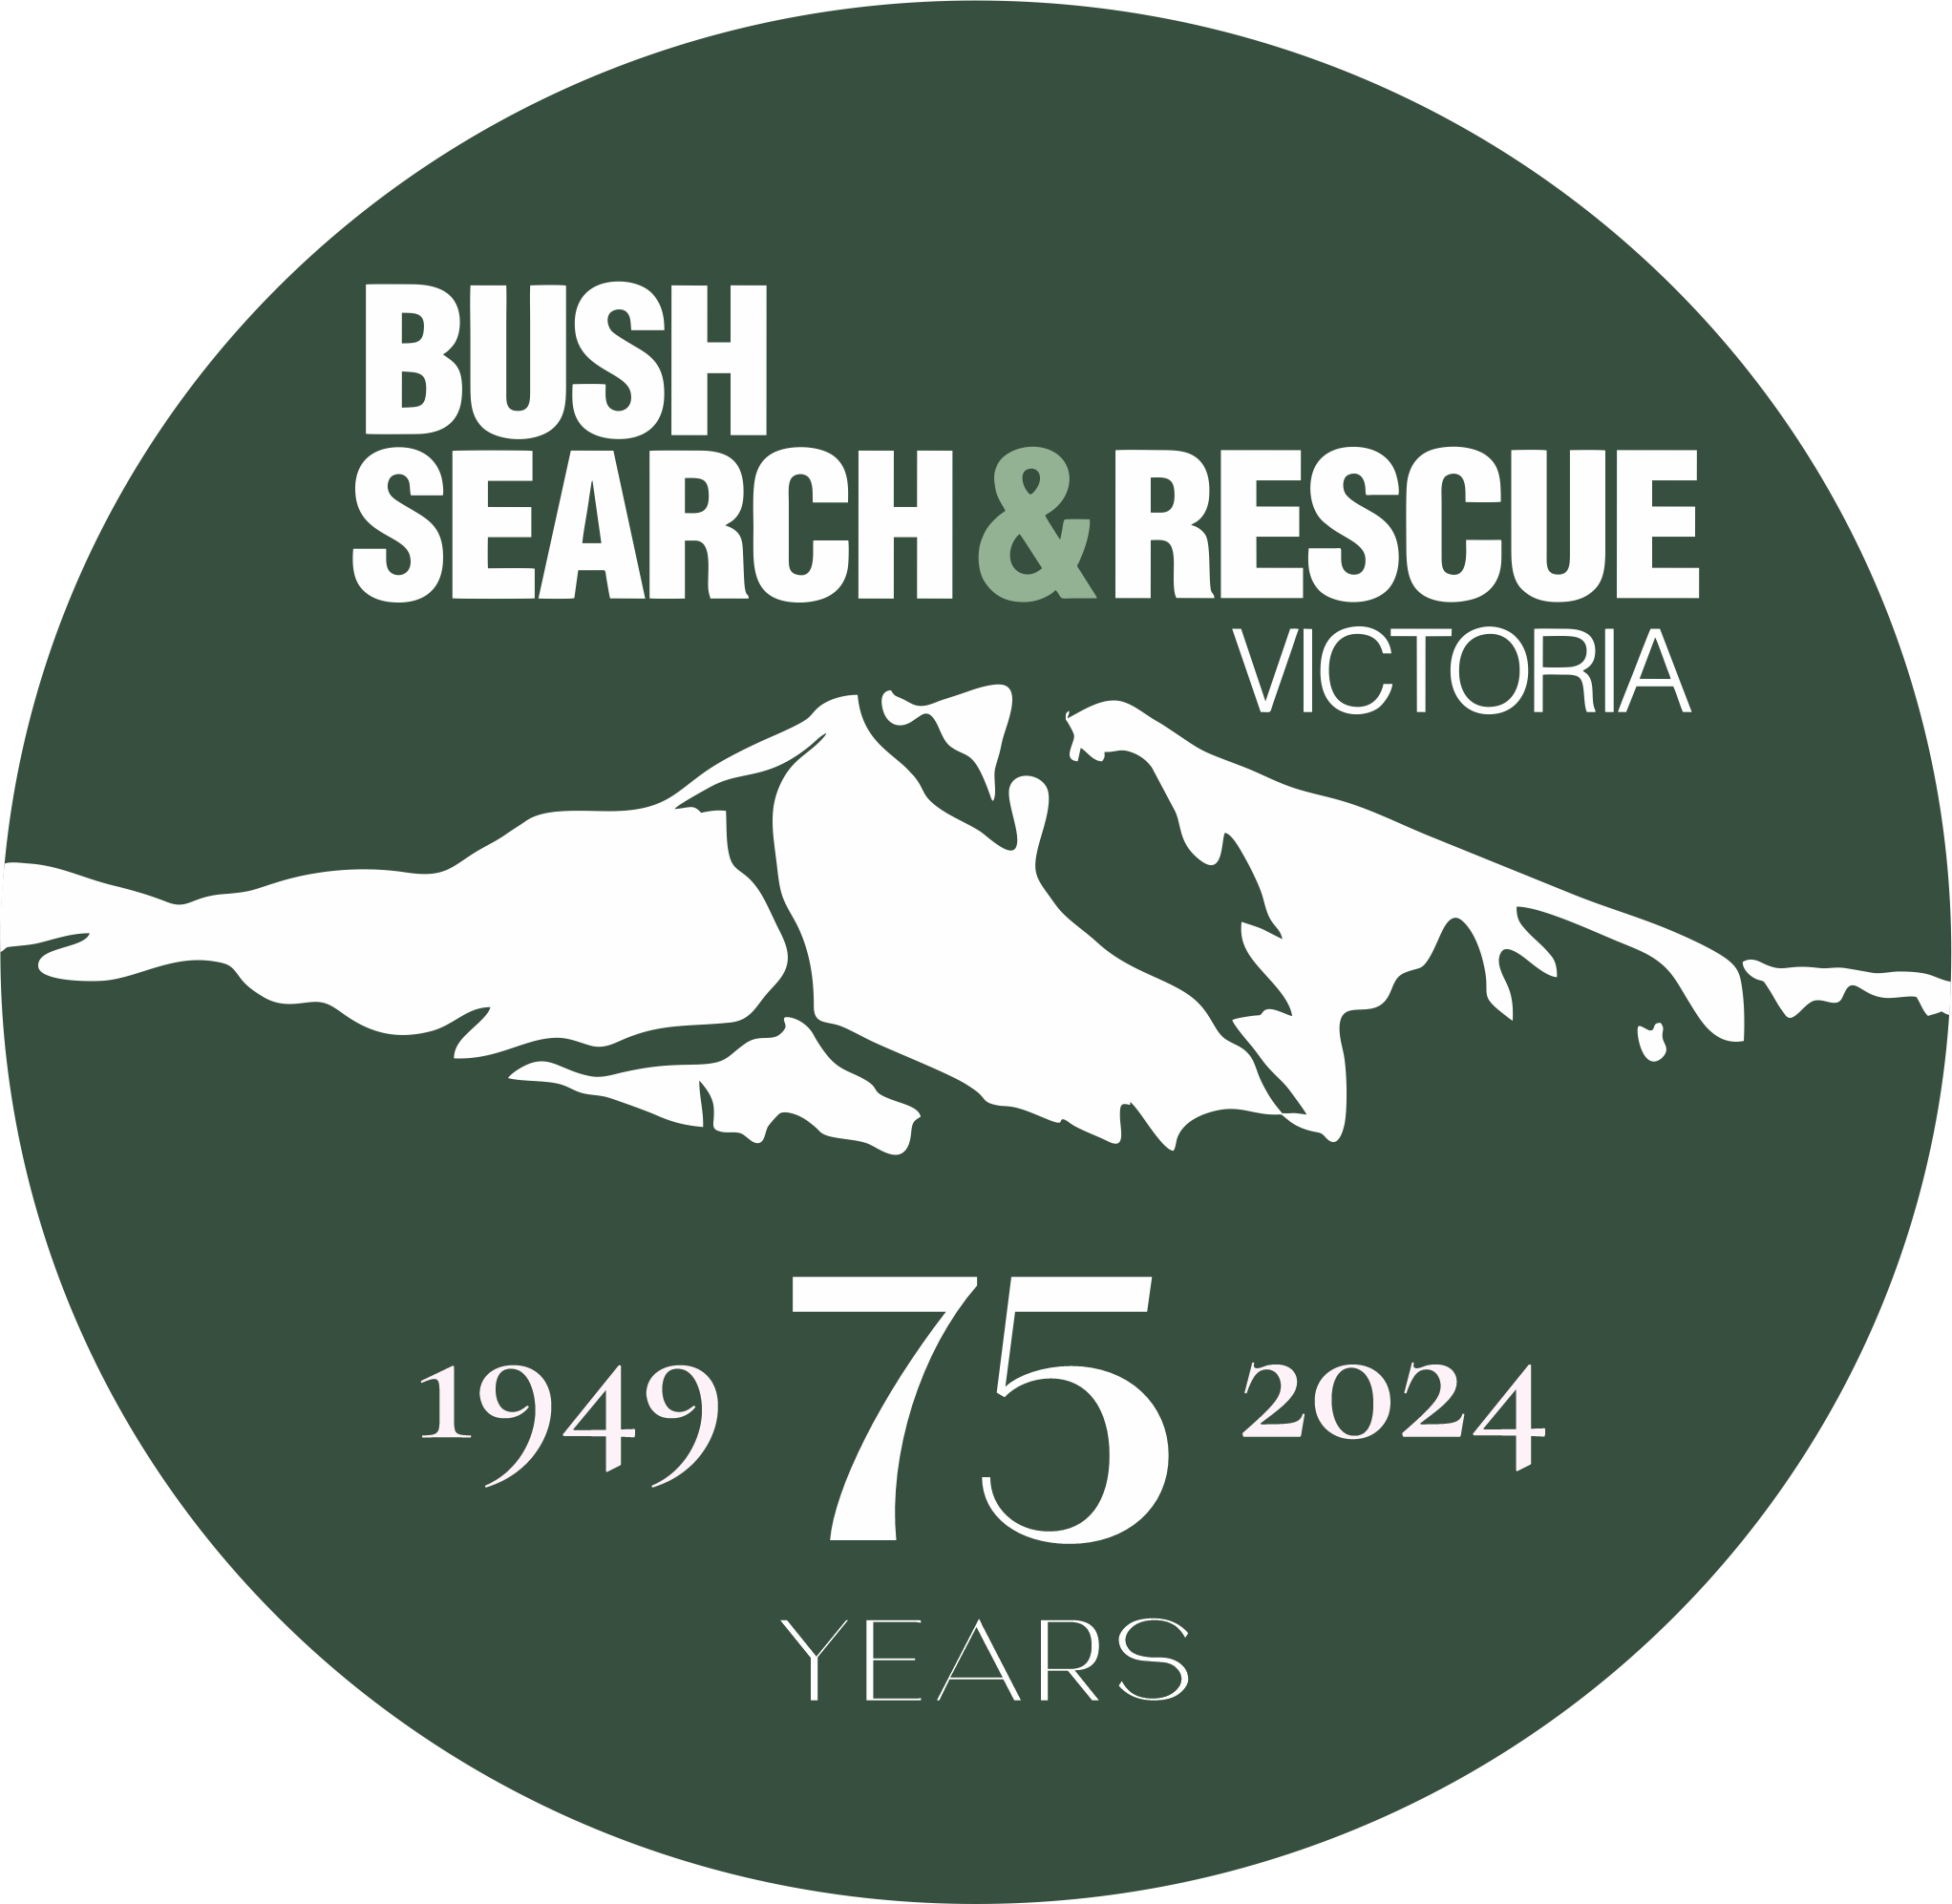 Bush Search and Rescue Victoria